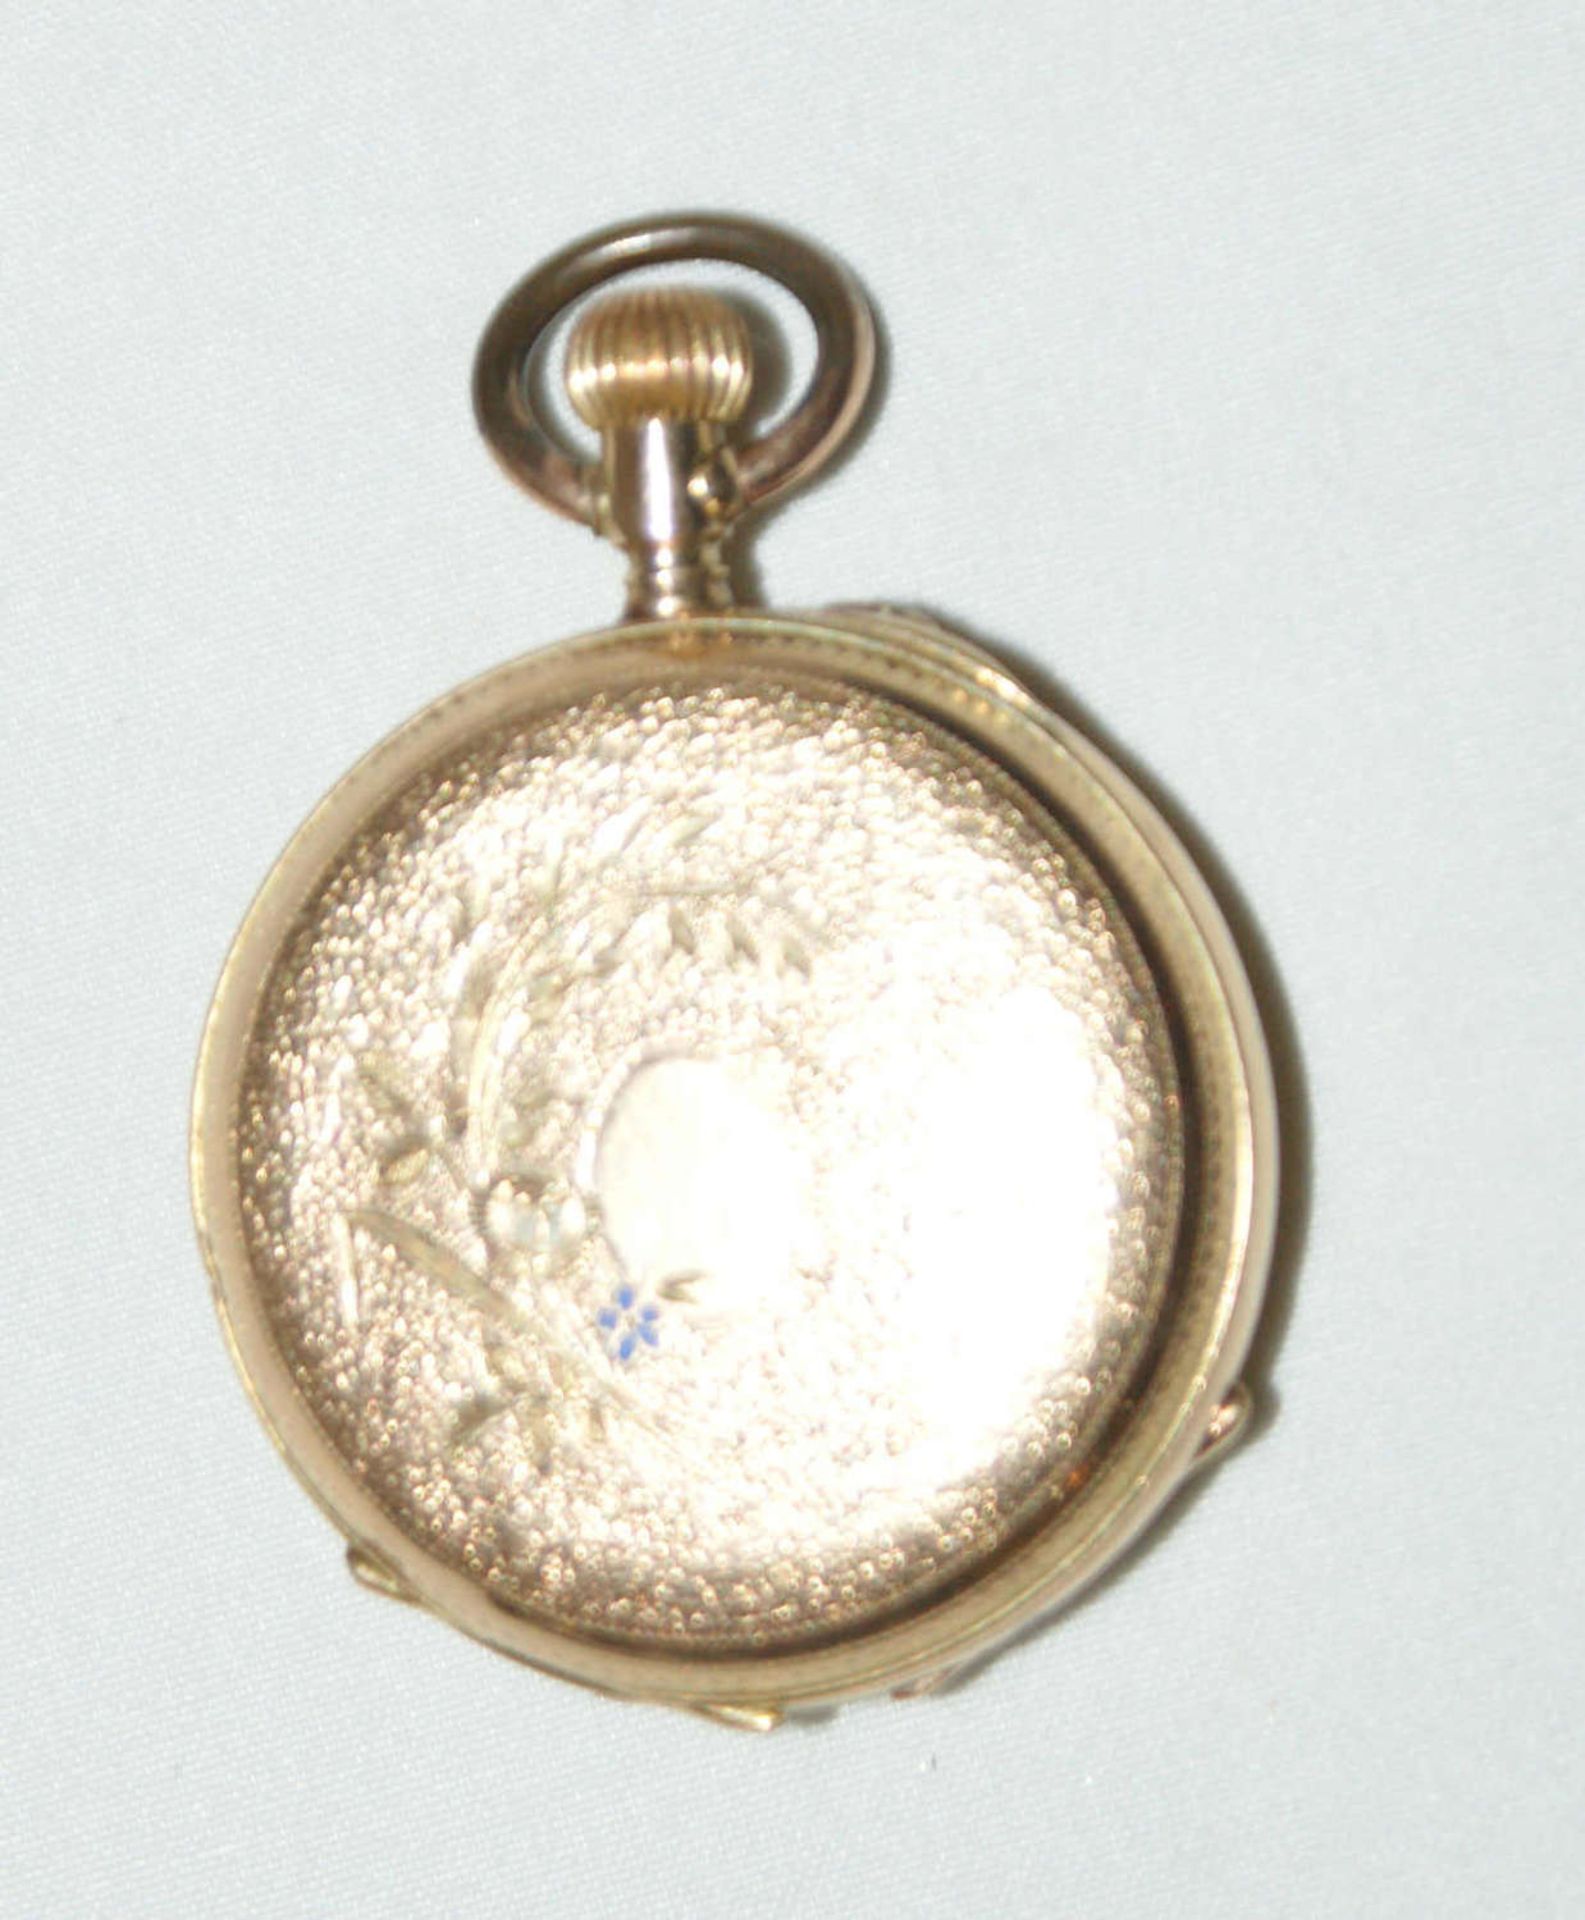 585er Gold Damentaschenuhr, Funktion geprüft, Innendeckel Metall, Gewicht ca. 20 g. - Bild 2 aus 2